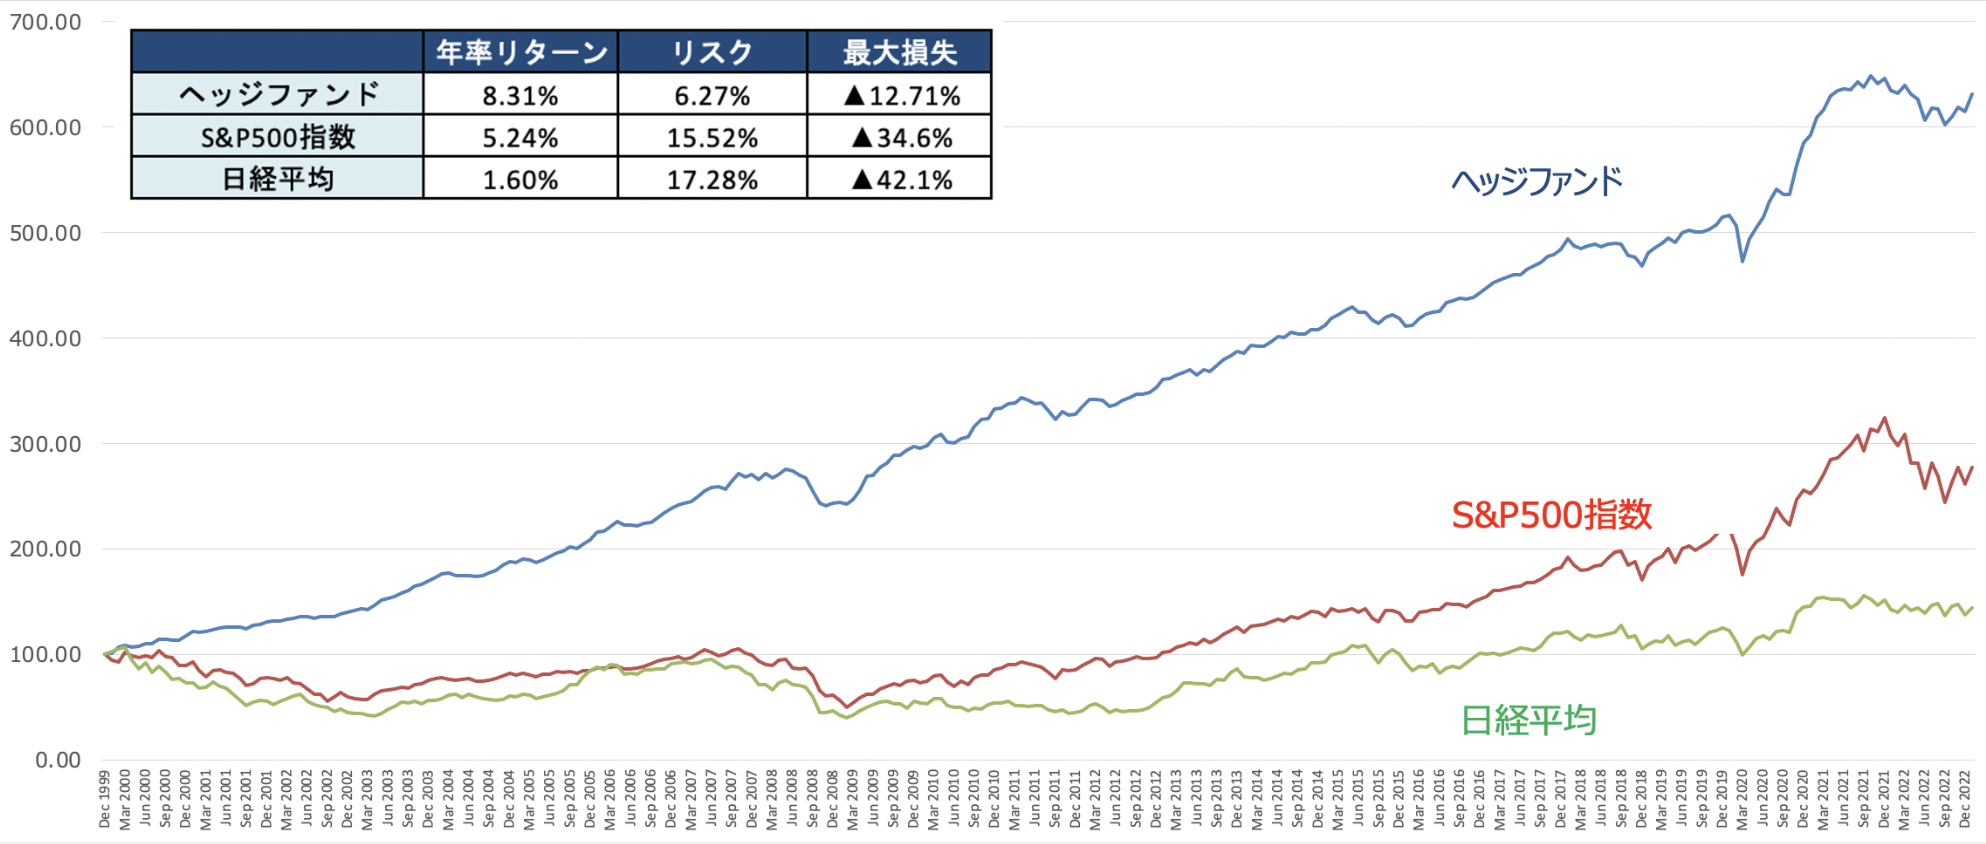 ヘッジファンドと日経平均とS&P500指数のリターンの比較